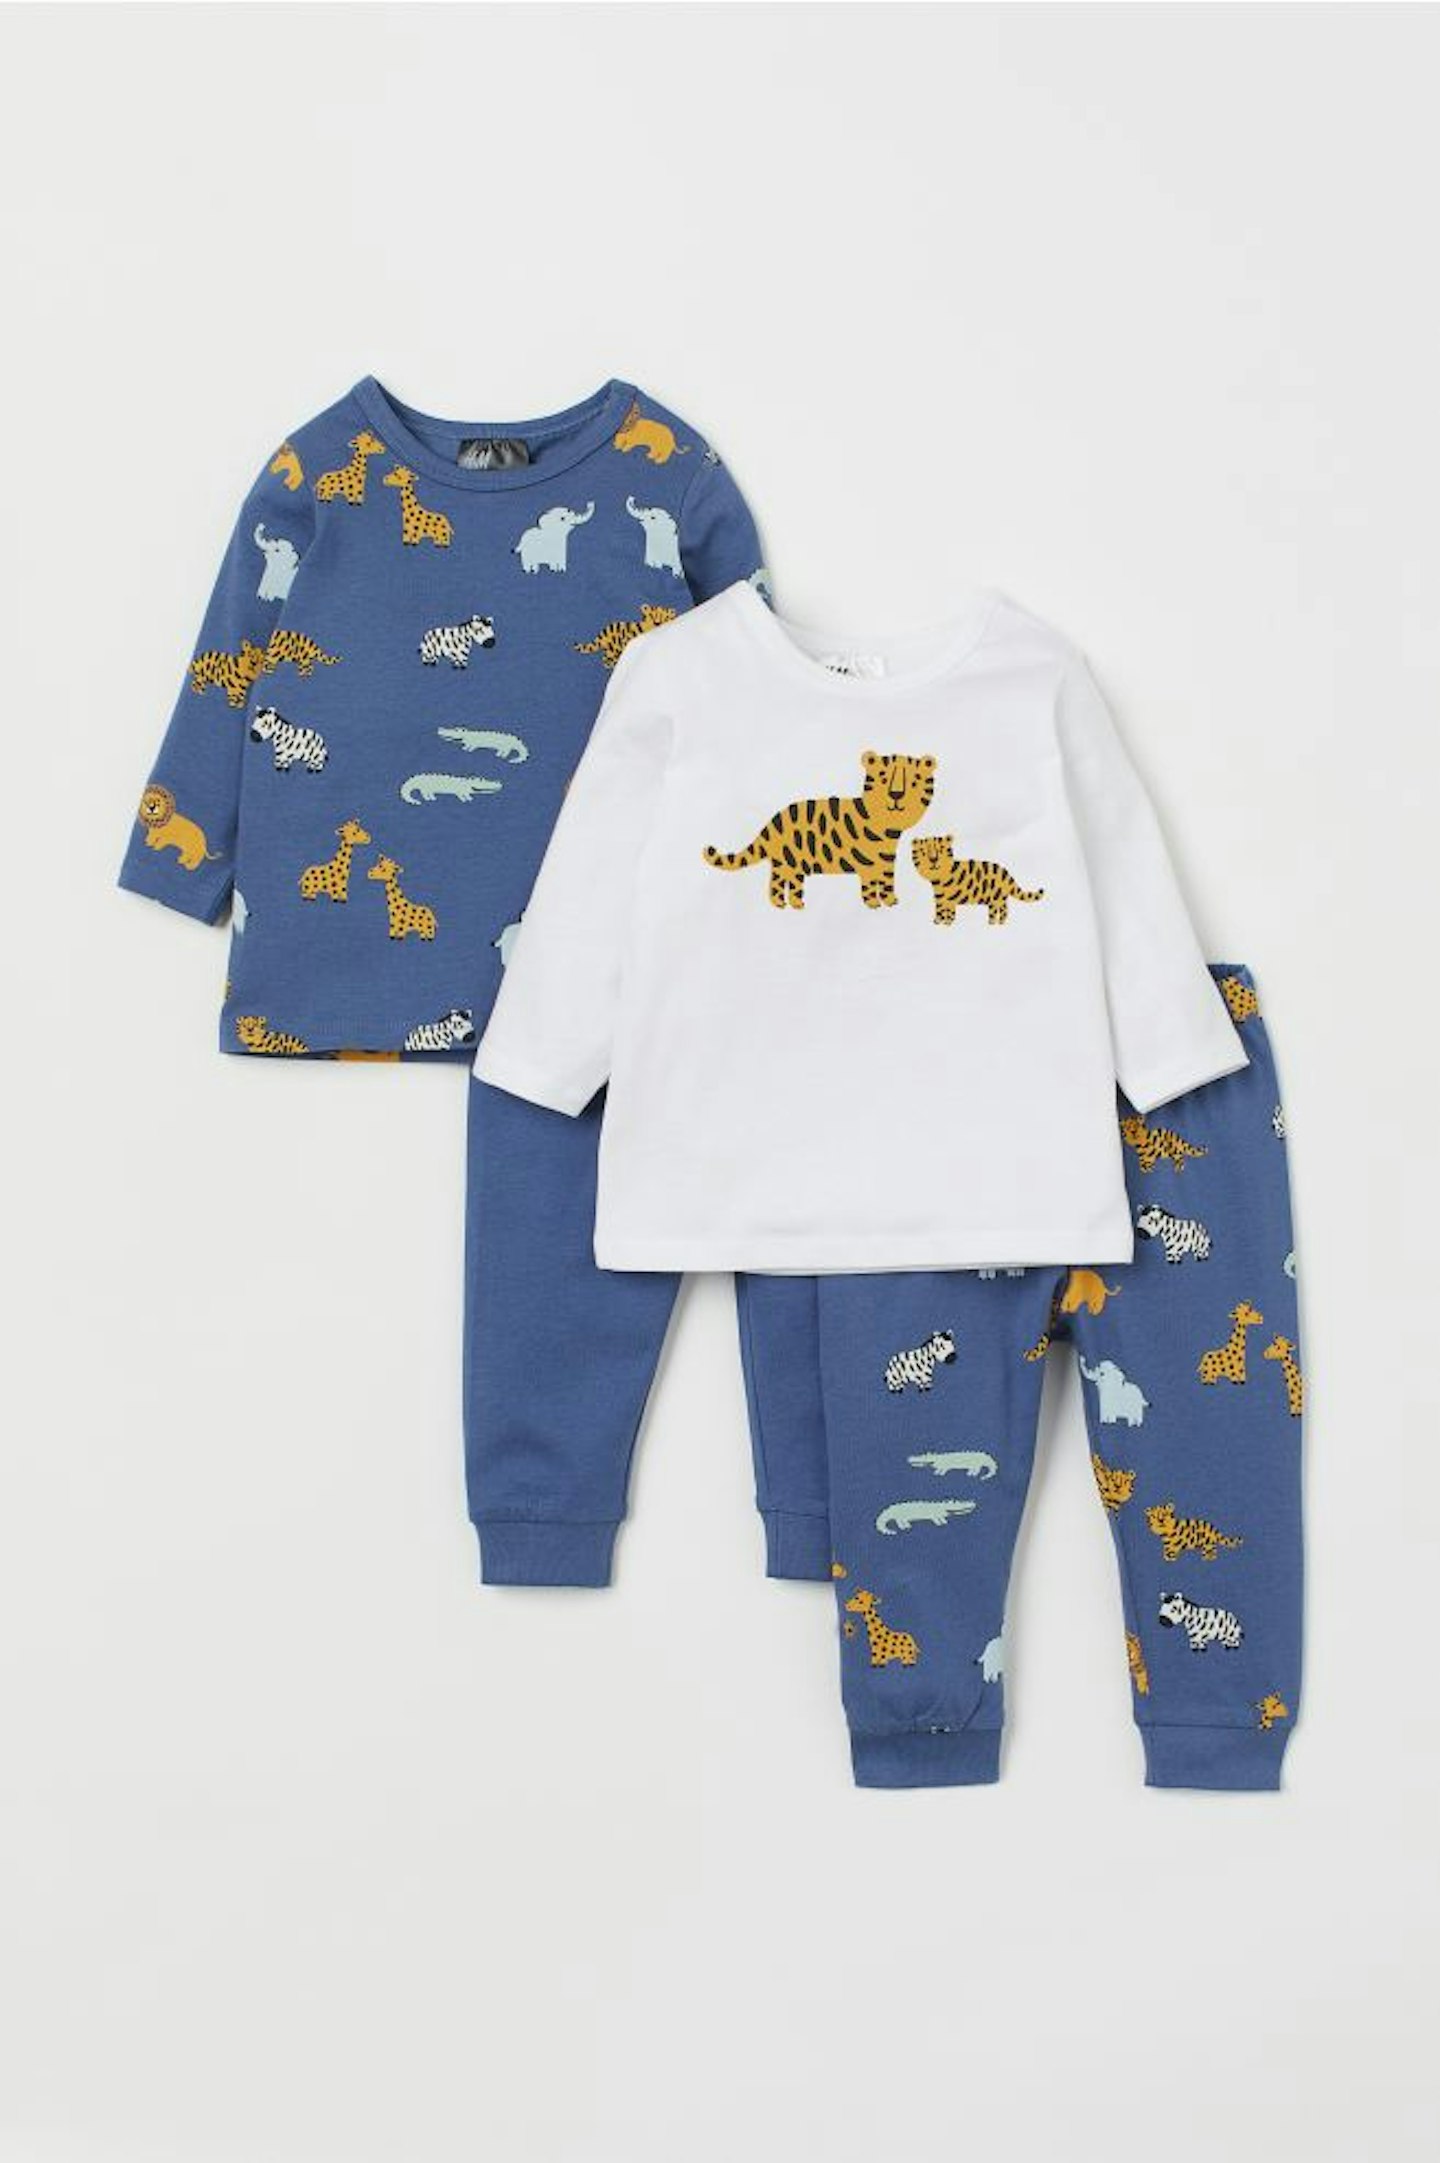 Animal pyjamas